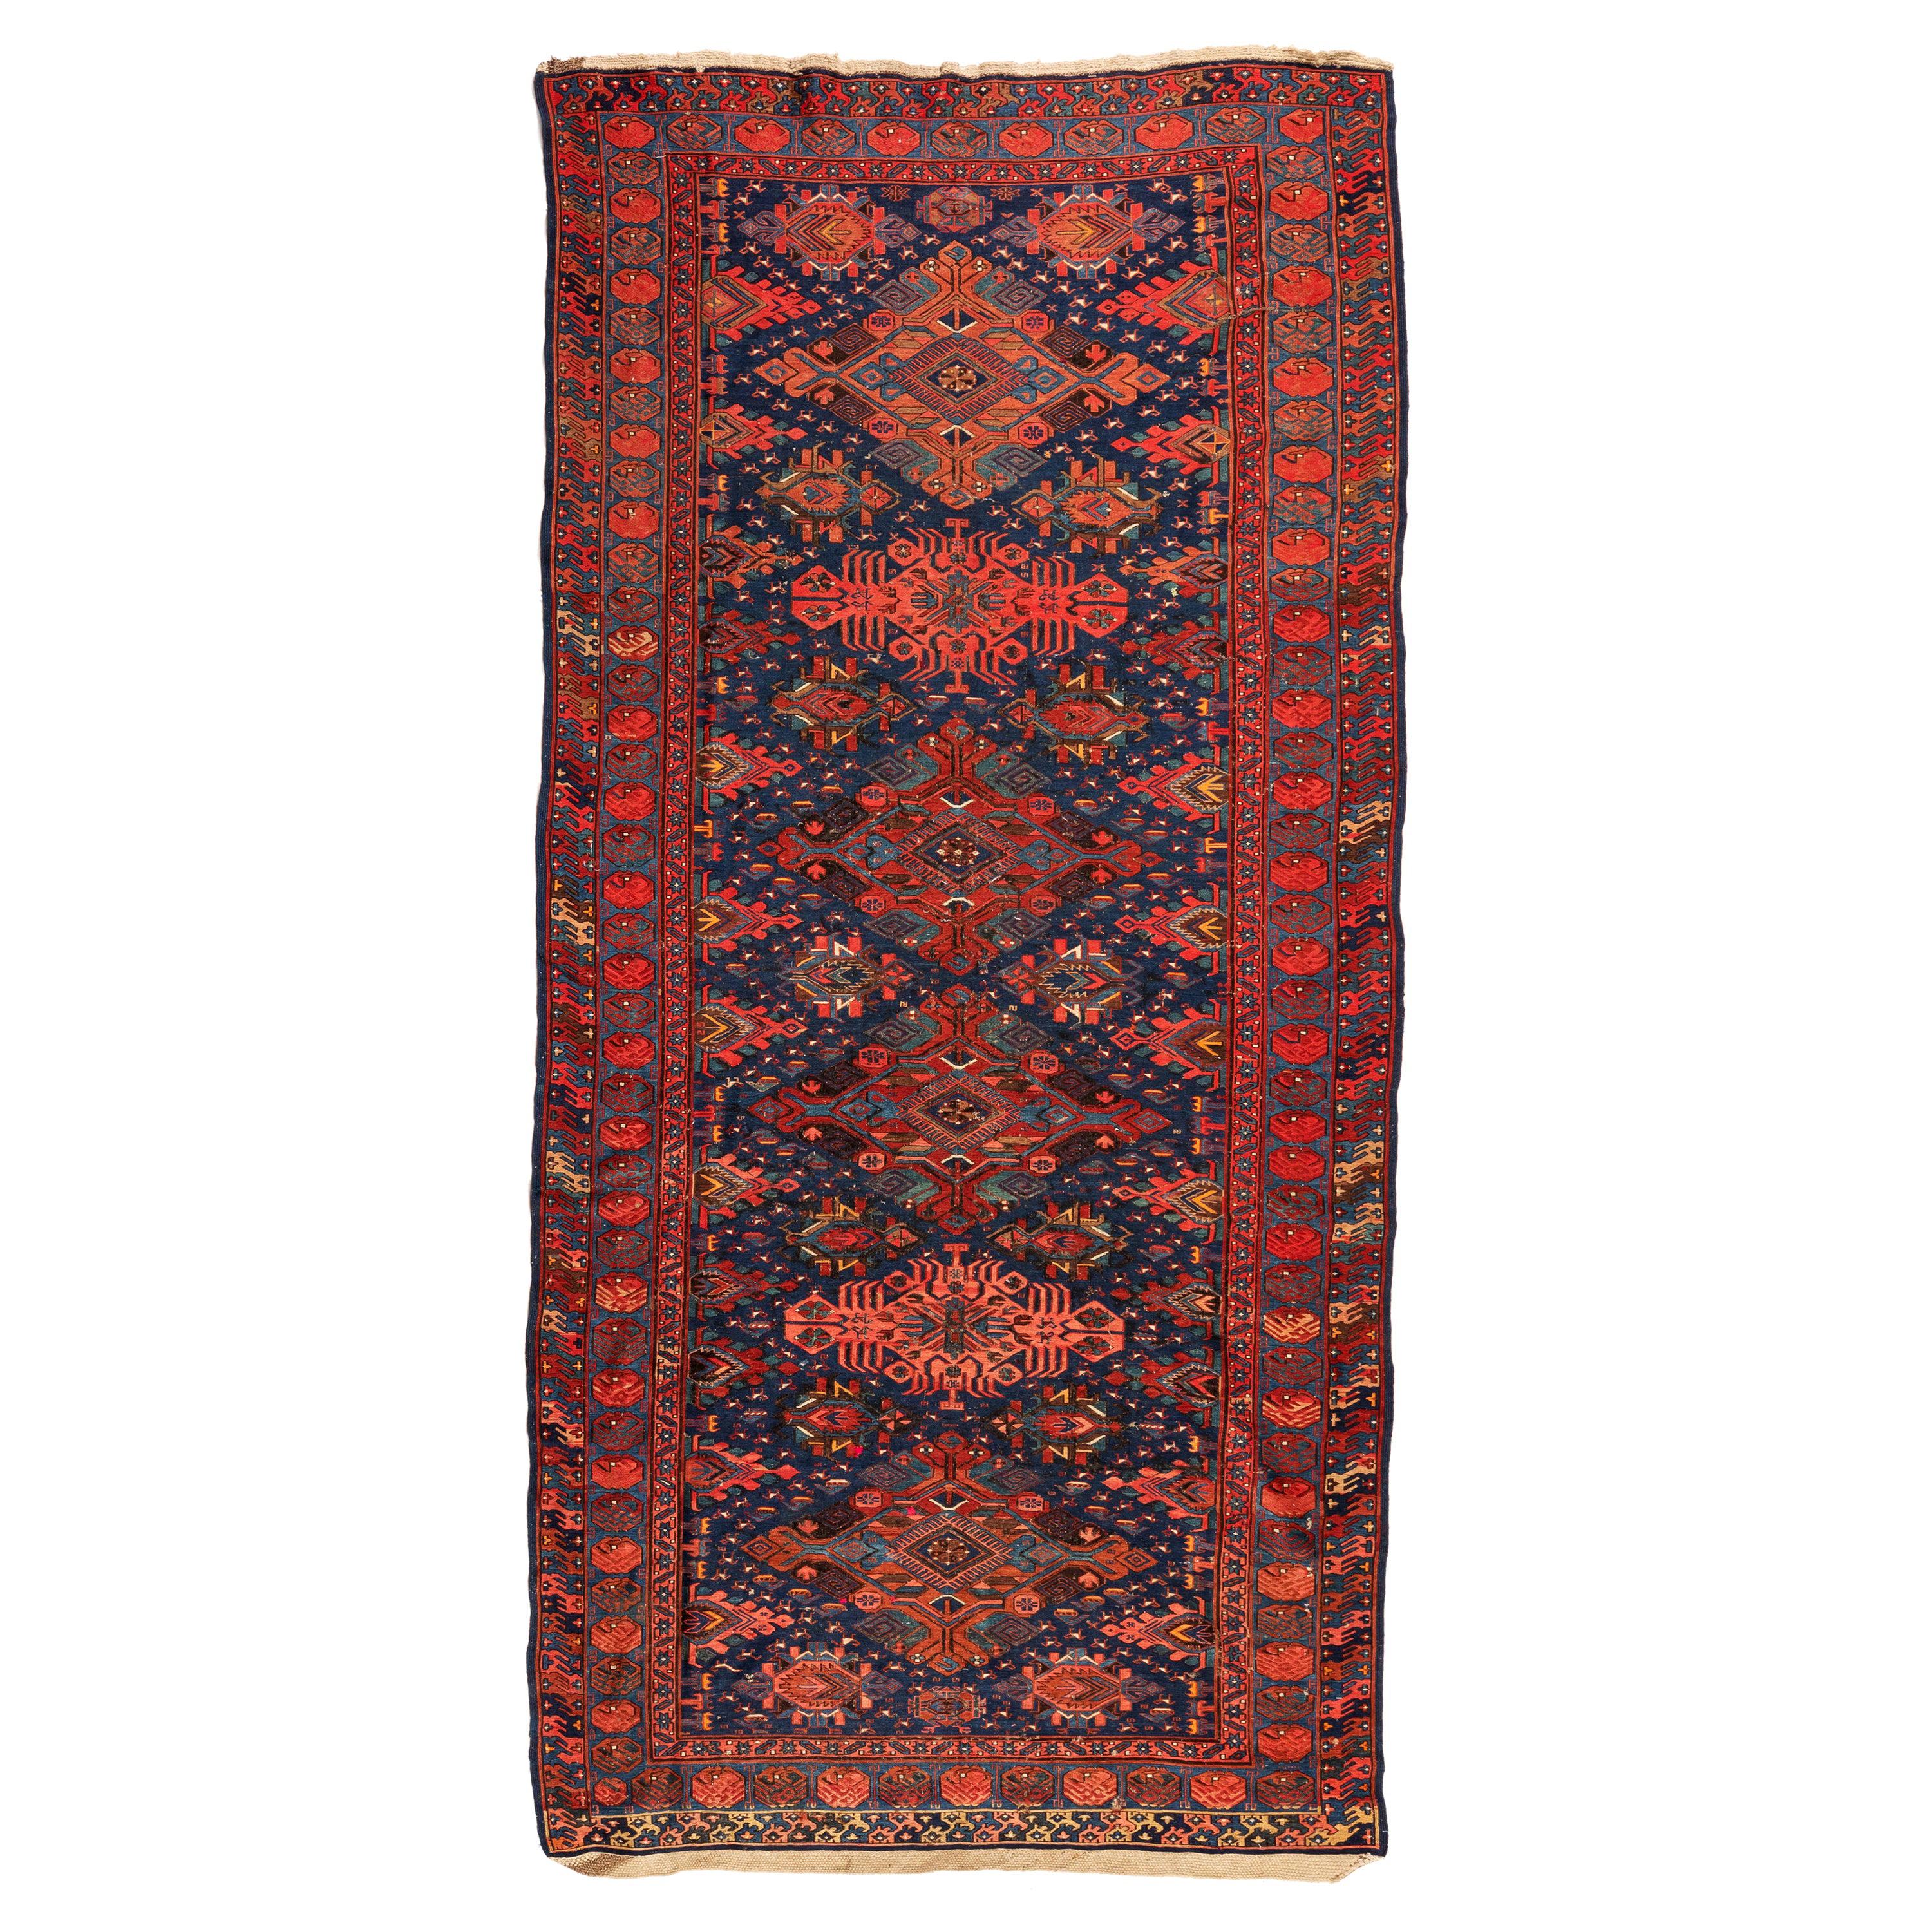 Antiker roter und marineblauer geometrischer kaukasischer Soumak-Teppich mit Stammesmotiven